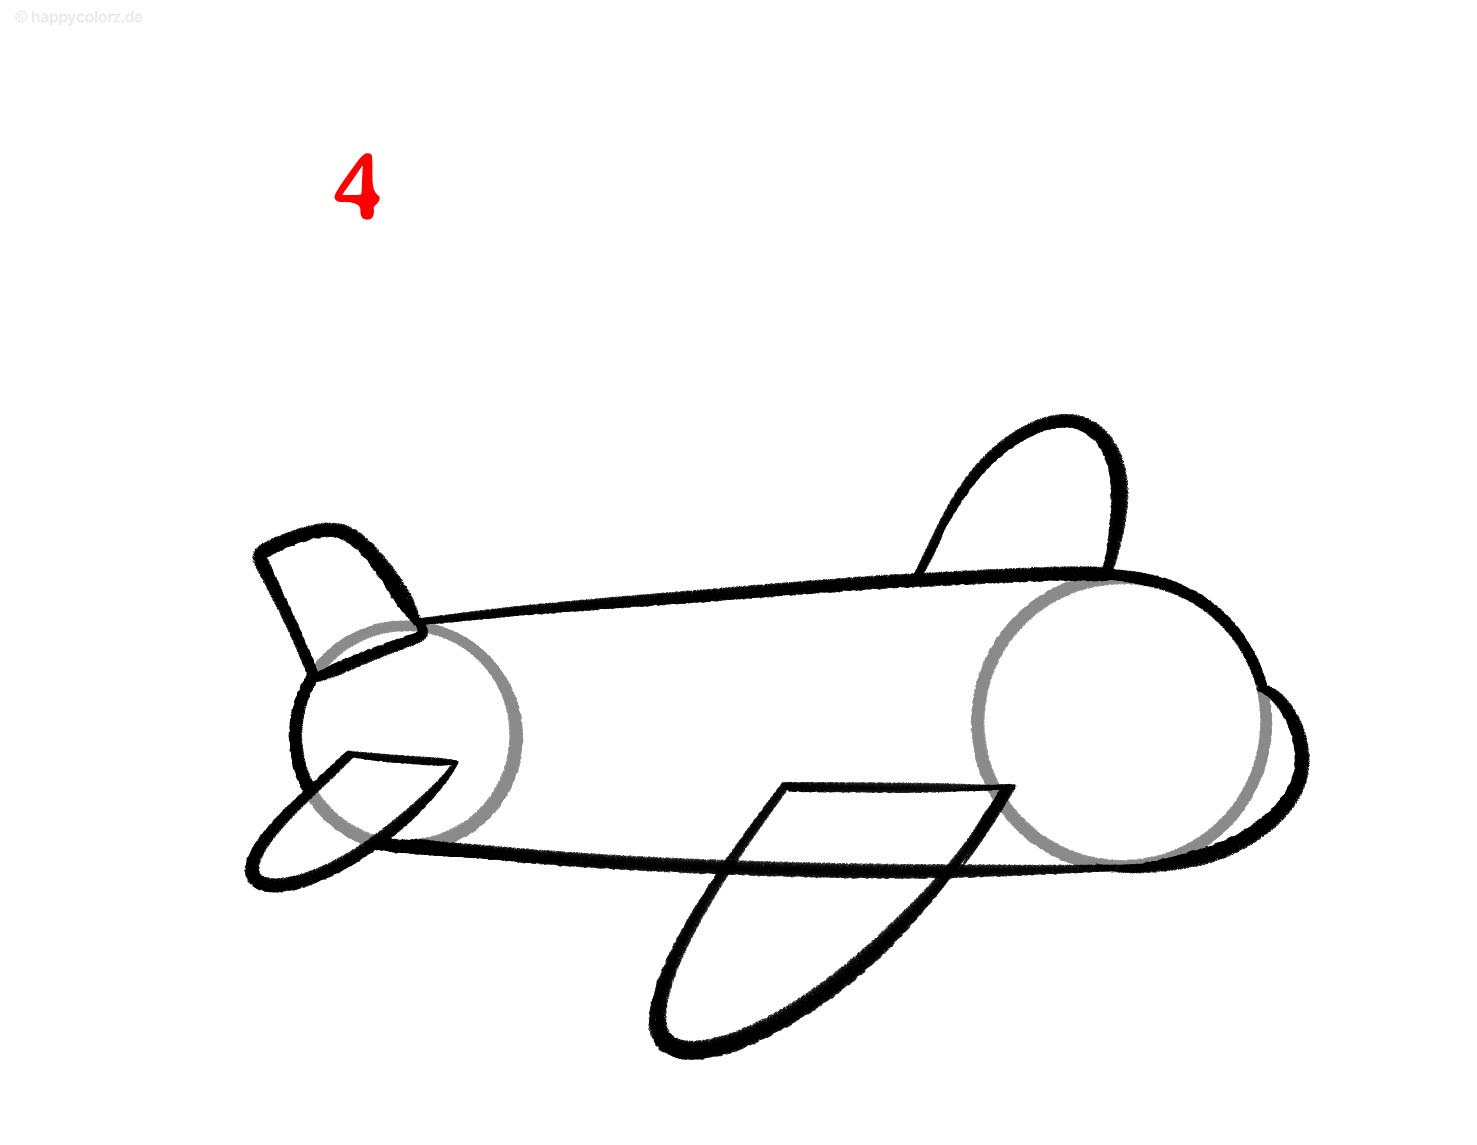 Flugzeug zeichnen - Schritt für Schritt